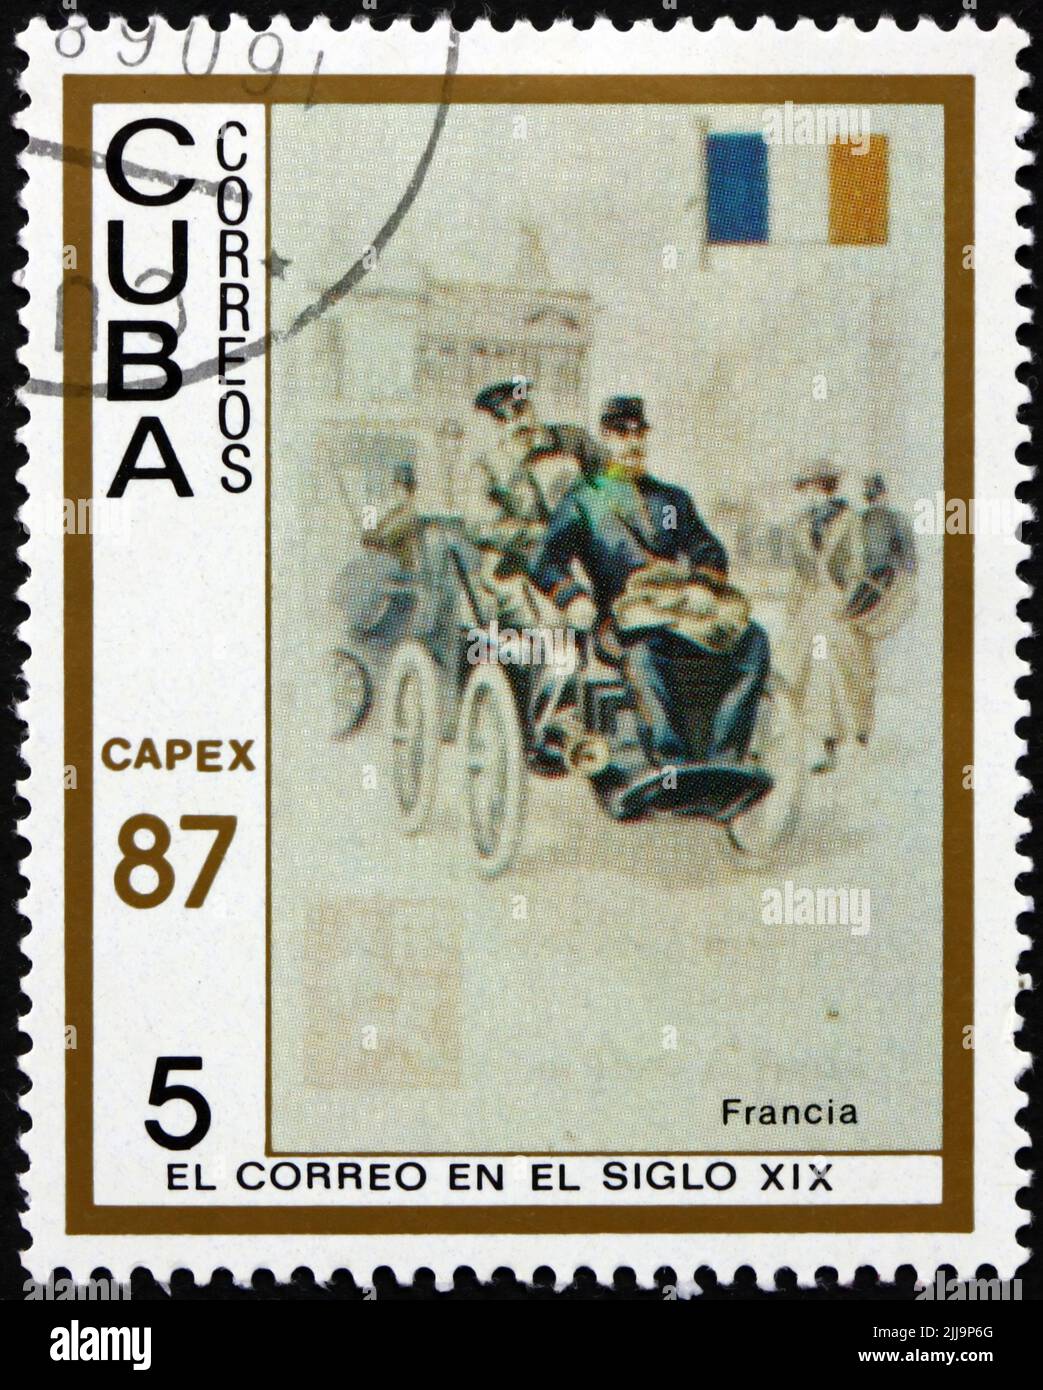 CUBA - VERS 1987 : un timbre imprimé à Cuba montre le début de l'automobile de france, photographiée sur des cartes à cigarettes, vers 1987 Banque D'Images